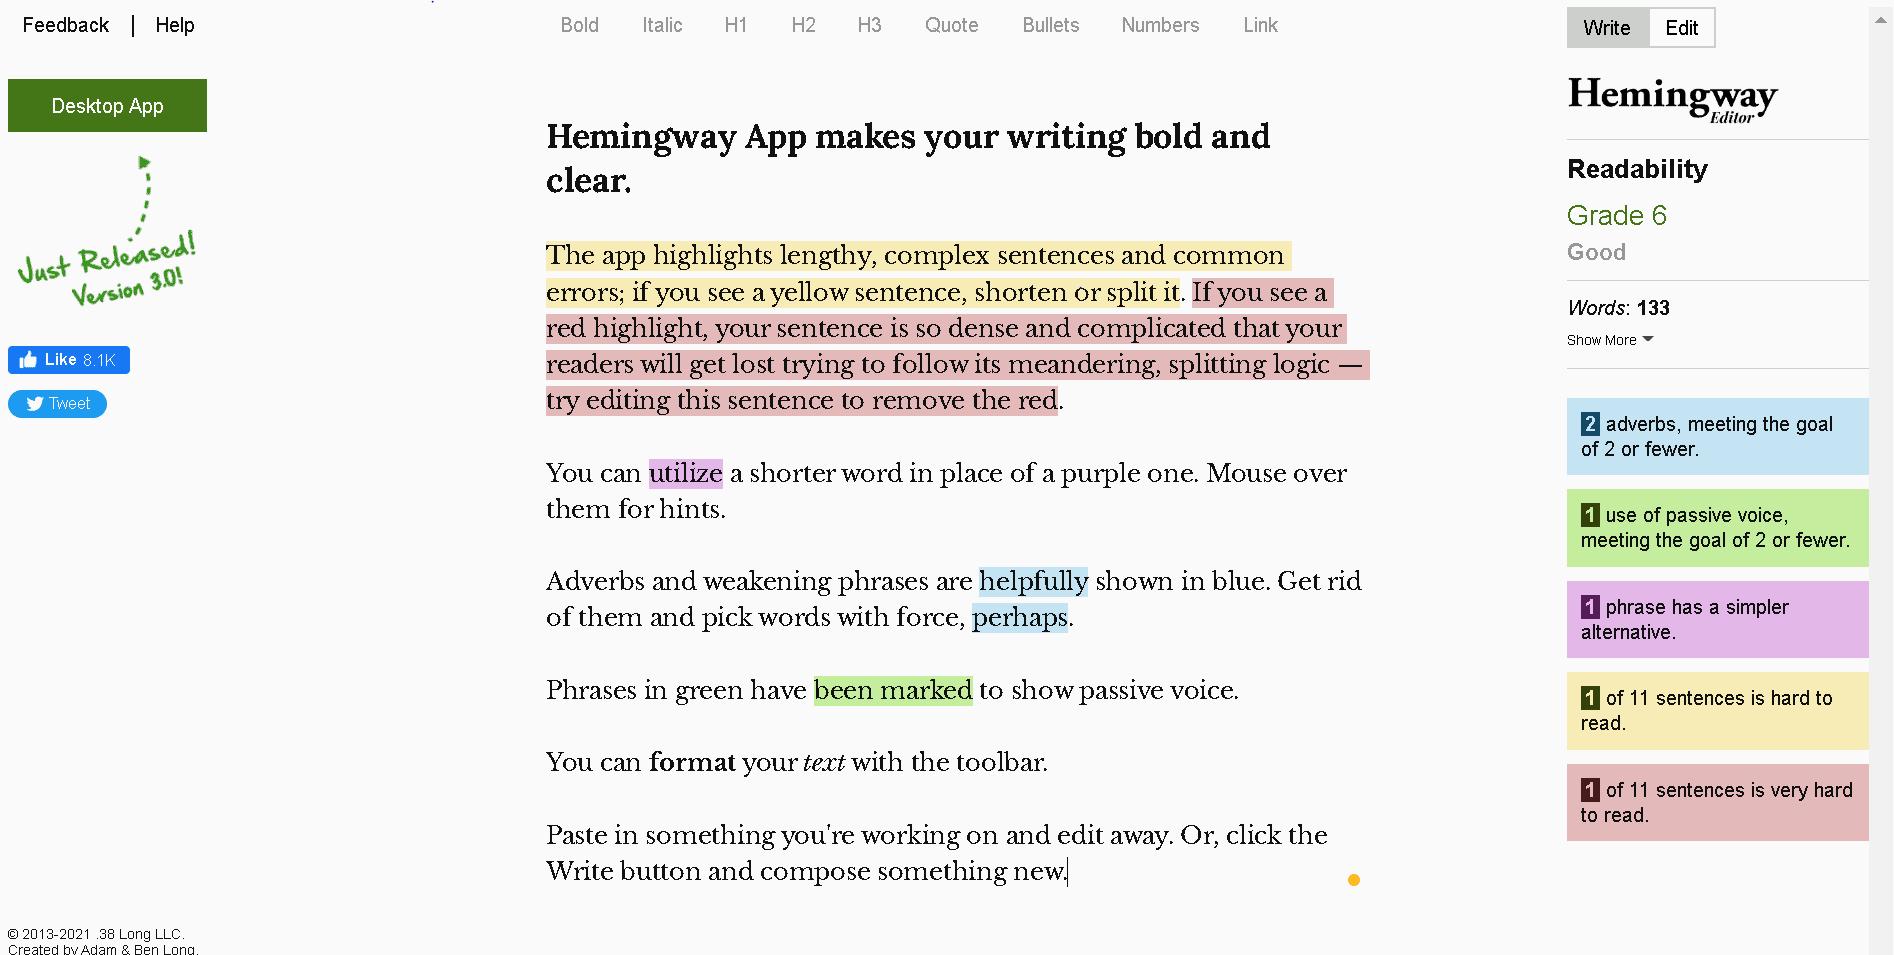 Hemingway App is a free online grammar checker/software